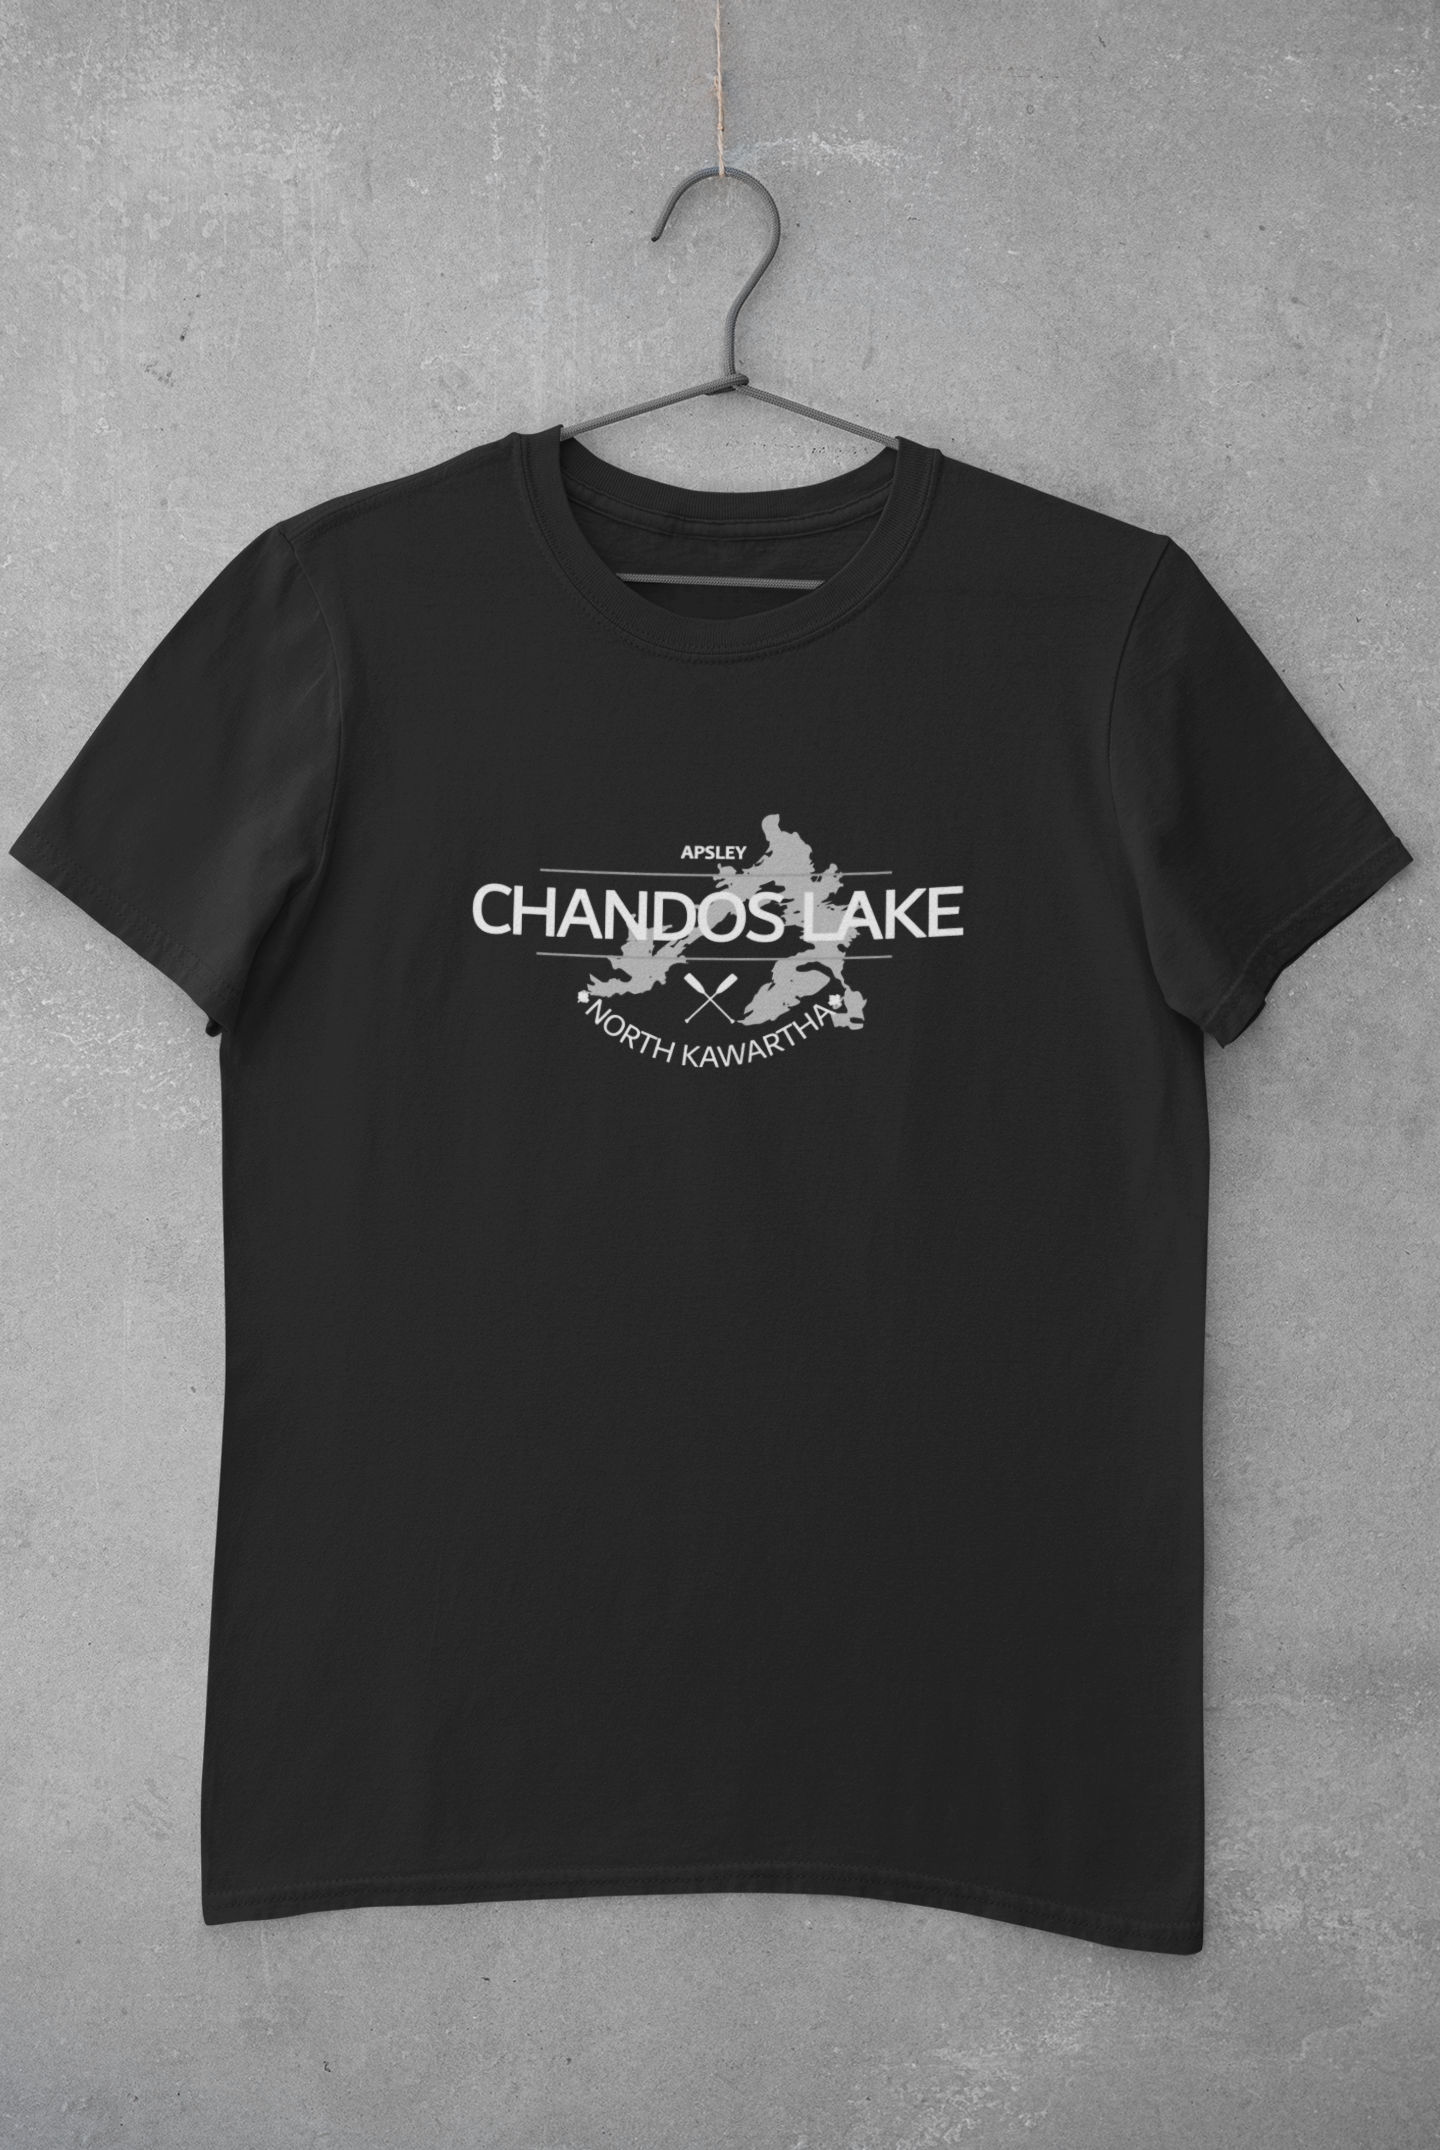 Chandos Lake Youth T-Shirt